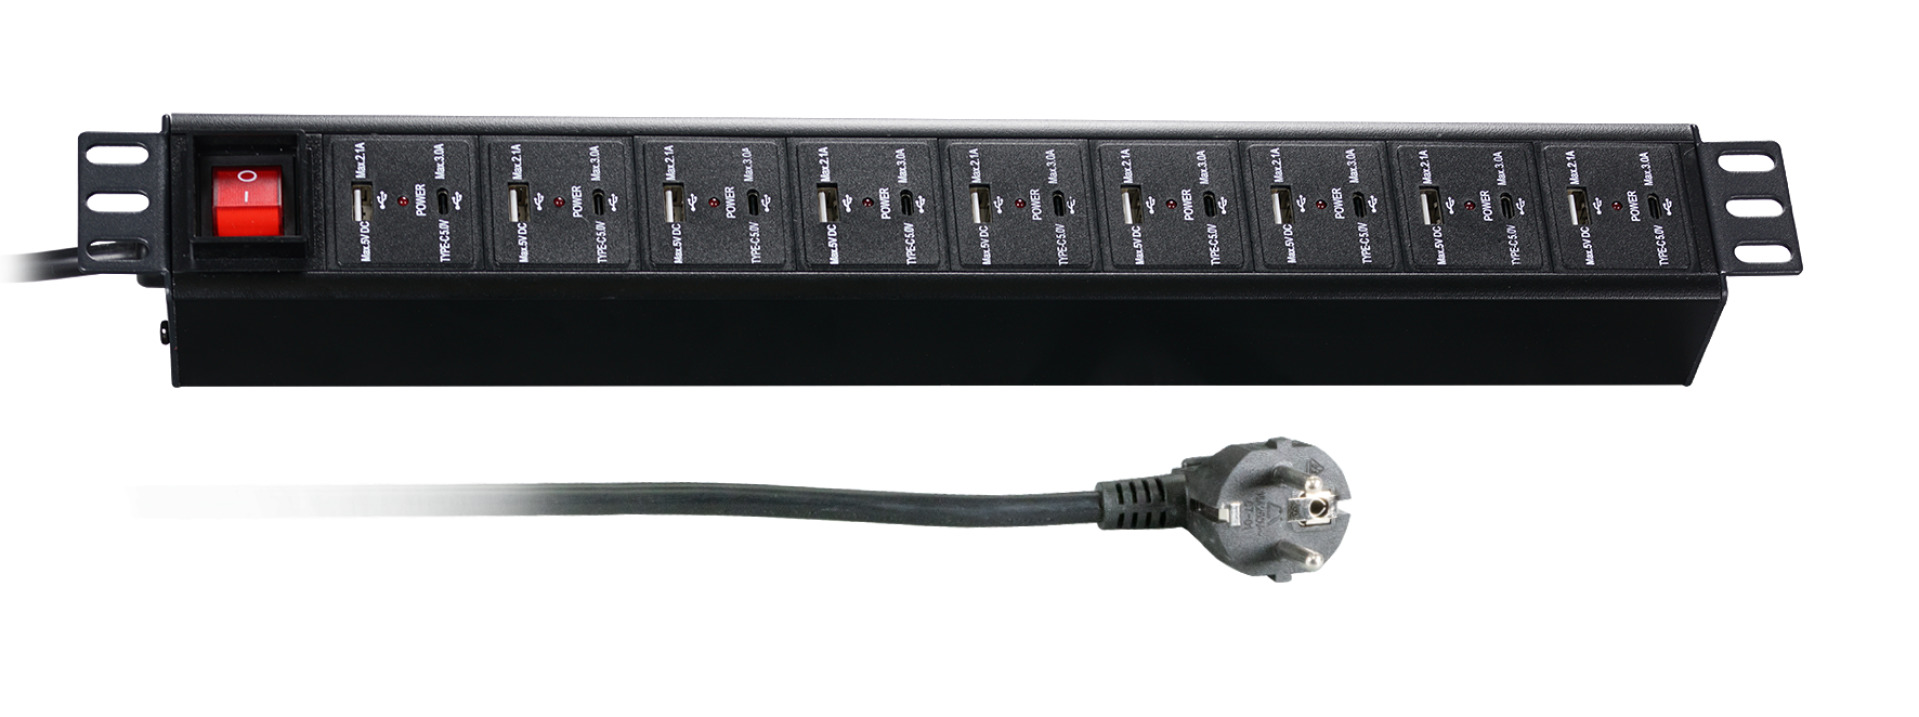 19“ 1.5U Socket Strip 18 x USB with Switch, Black